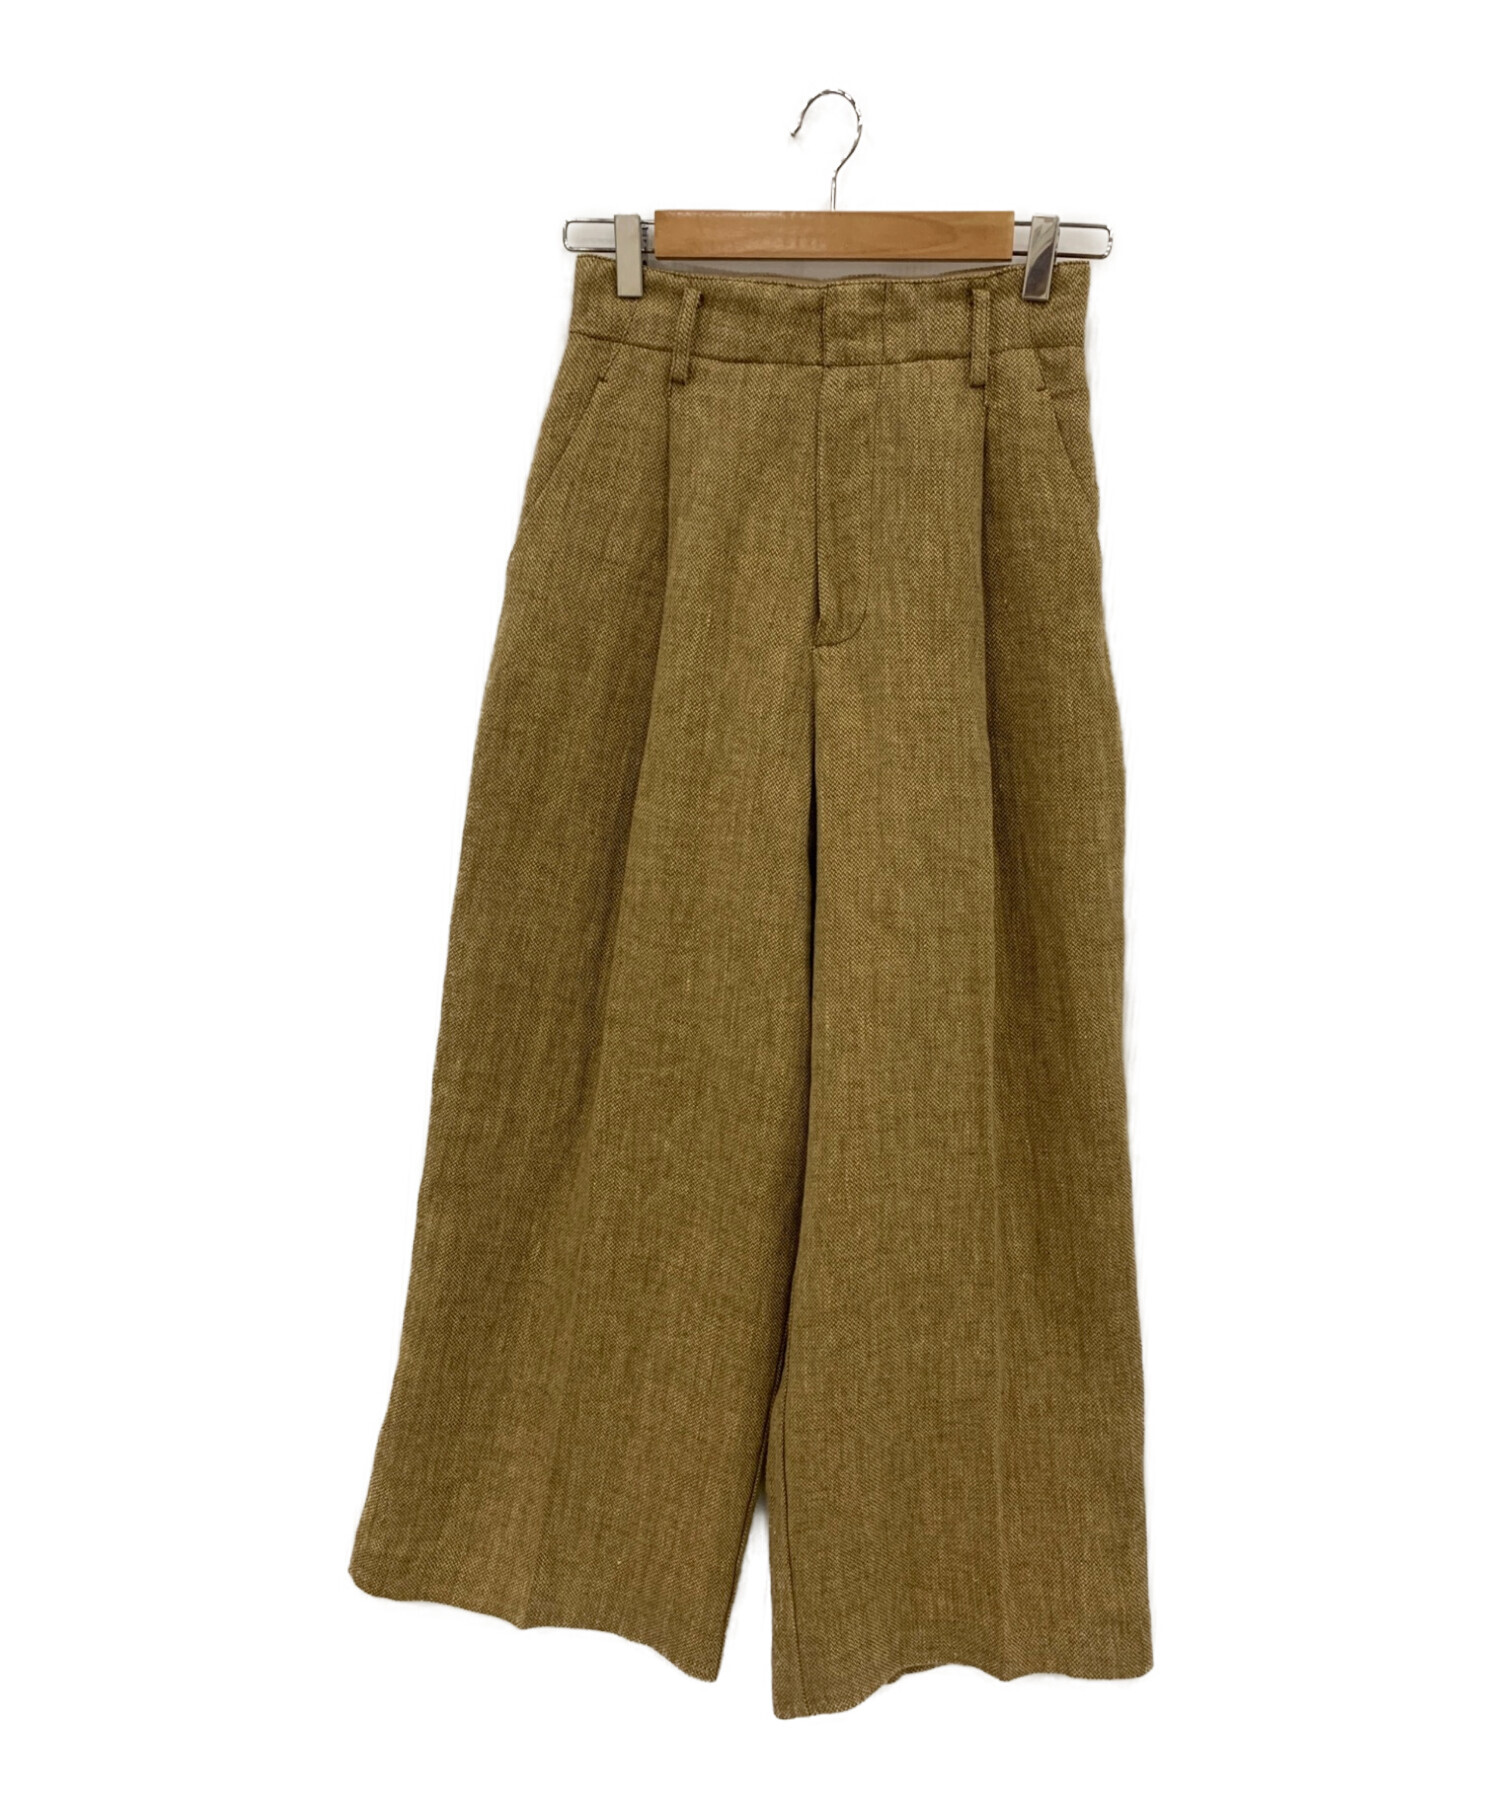 新品未使用タグ付きです【新品未使用】todayful Tuck Linen Trousers 36